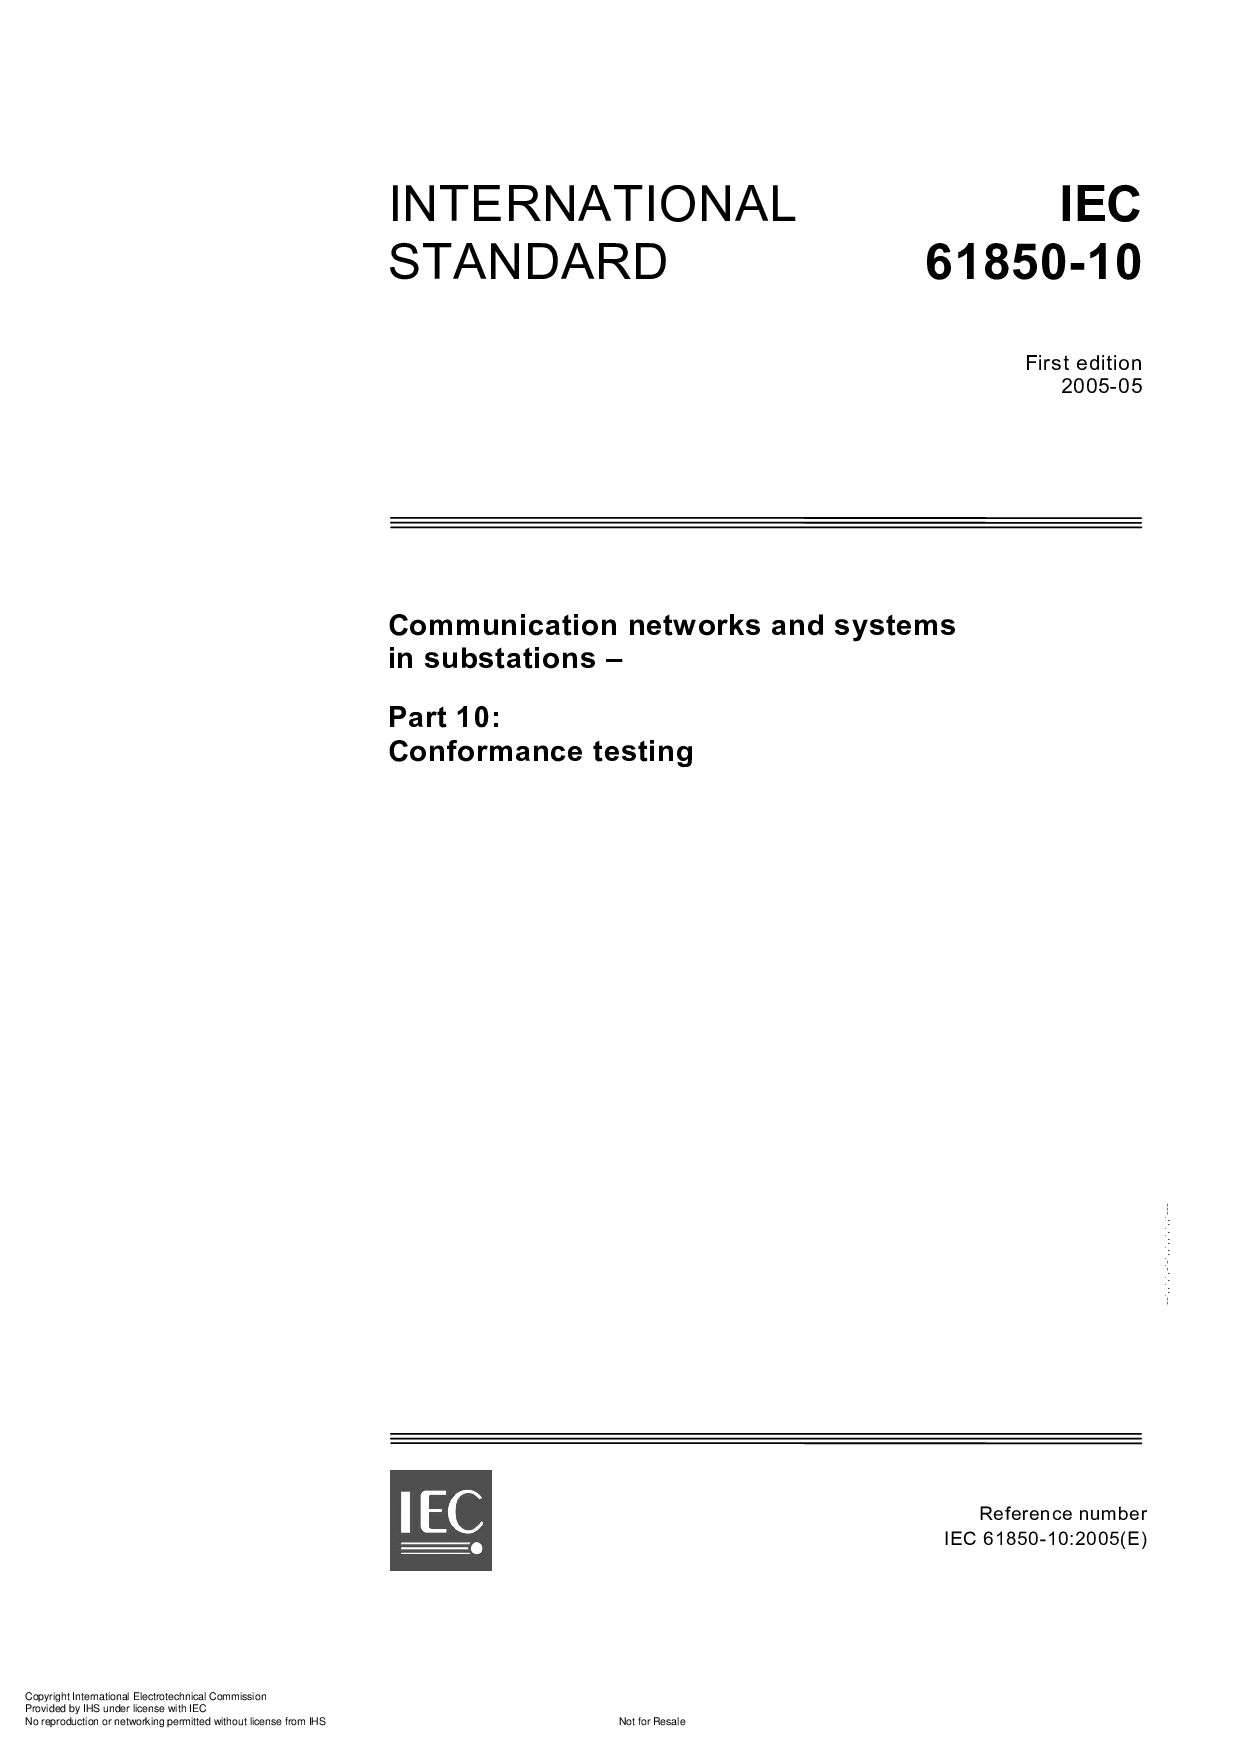 IEC 61850-10:2005